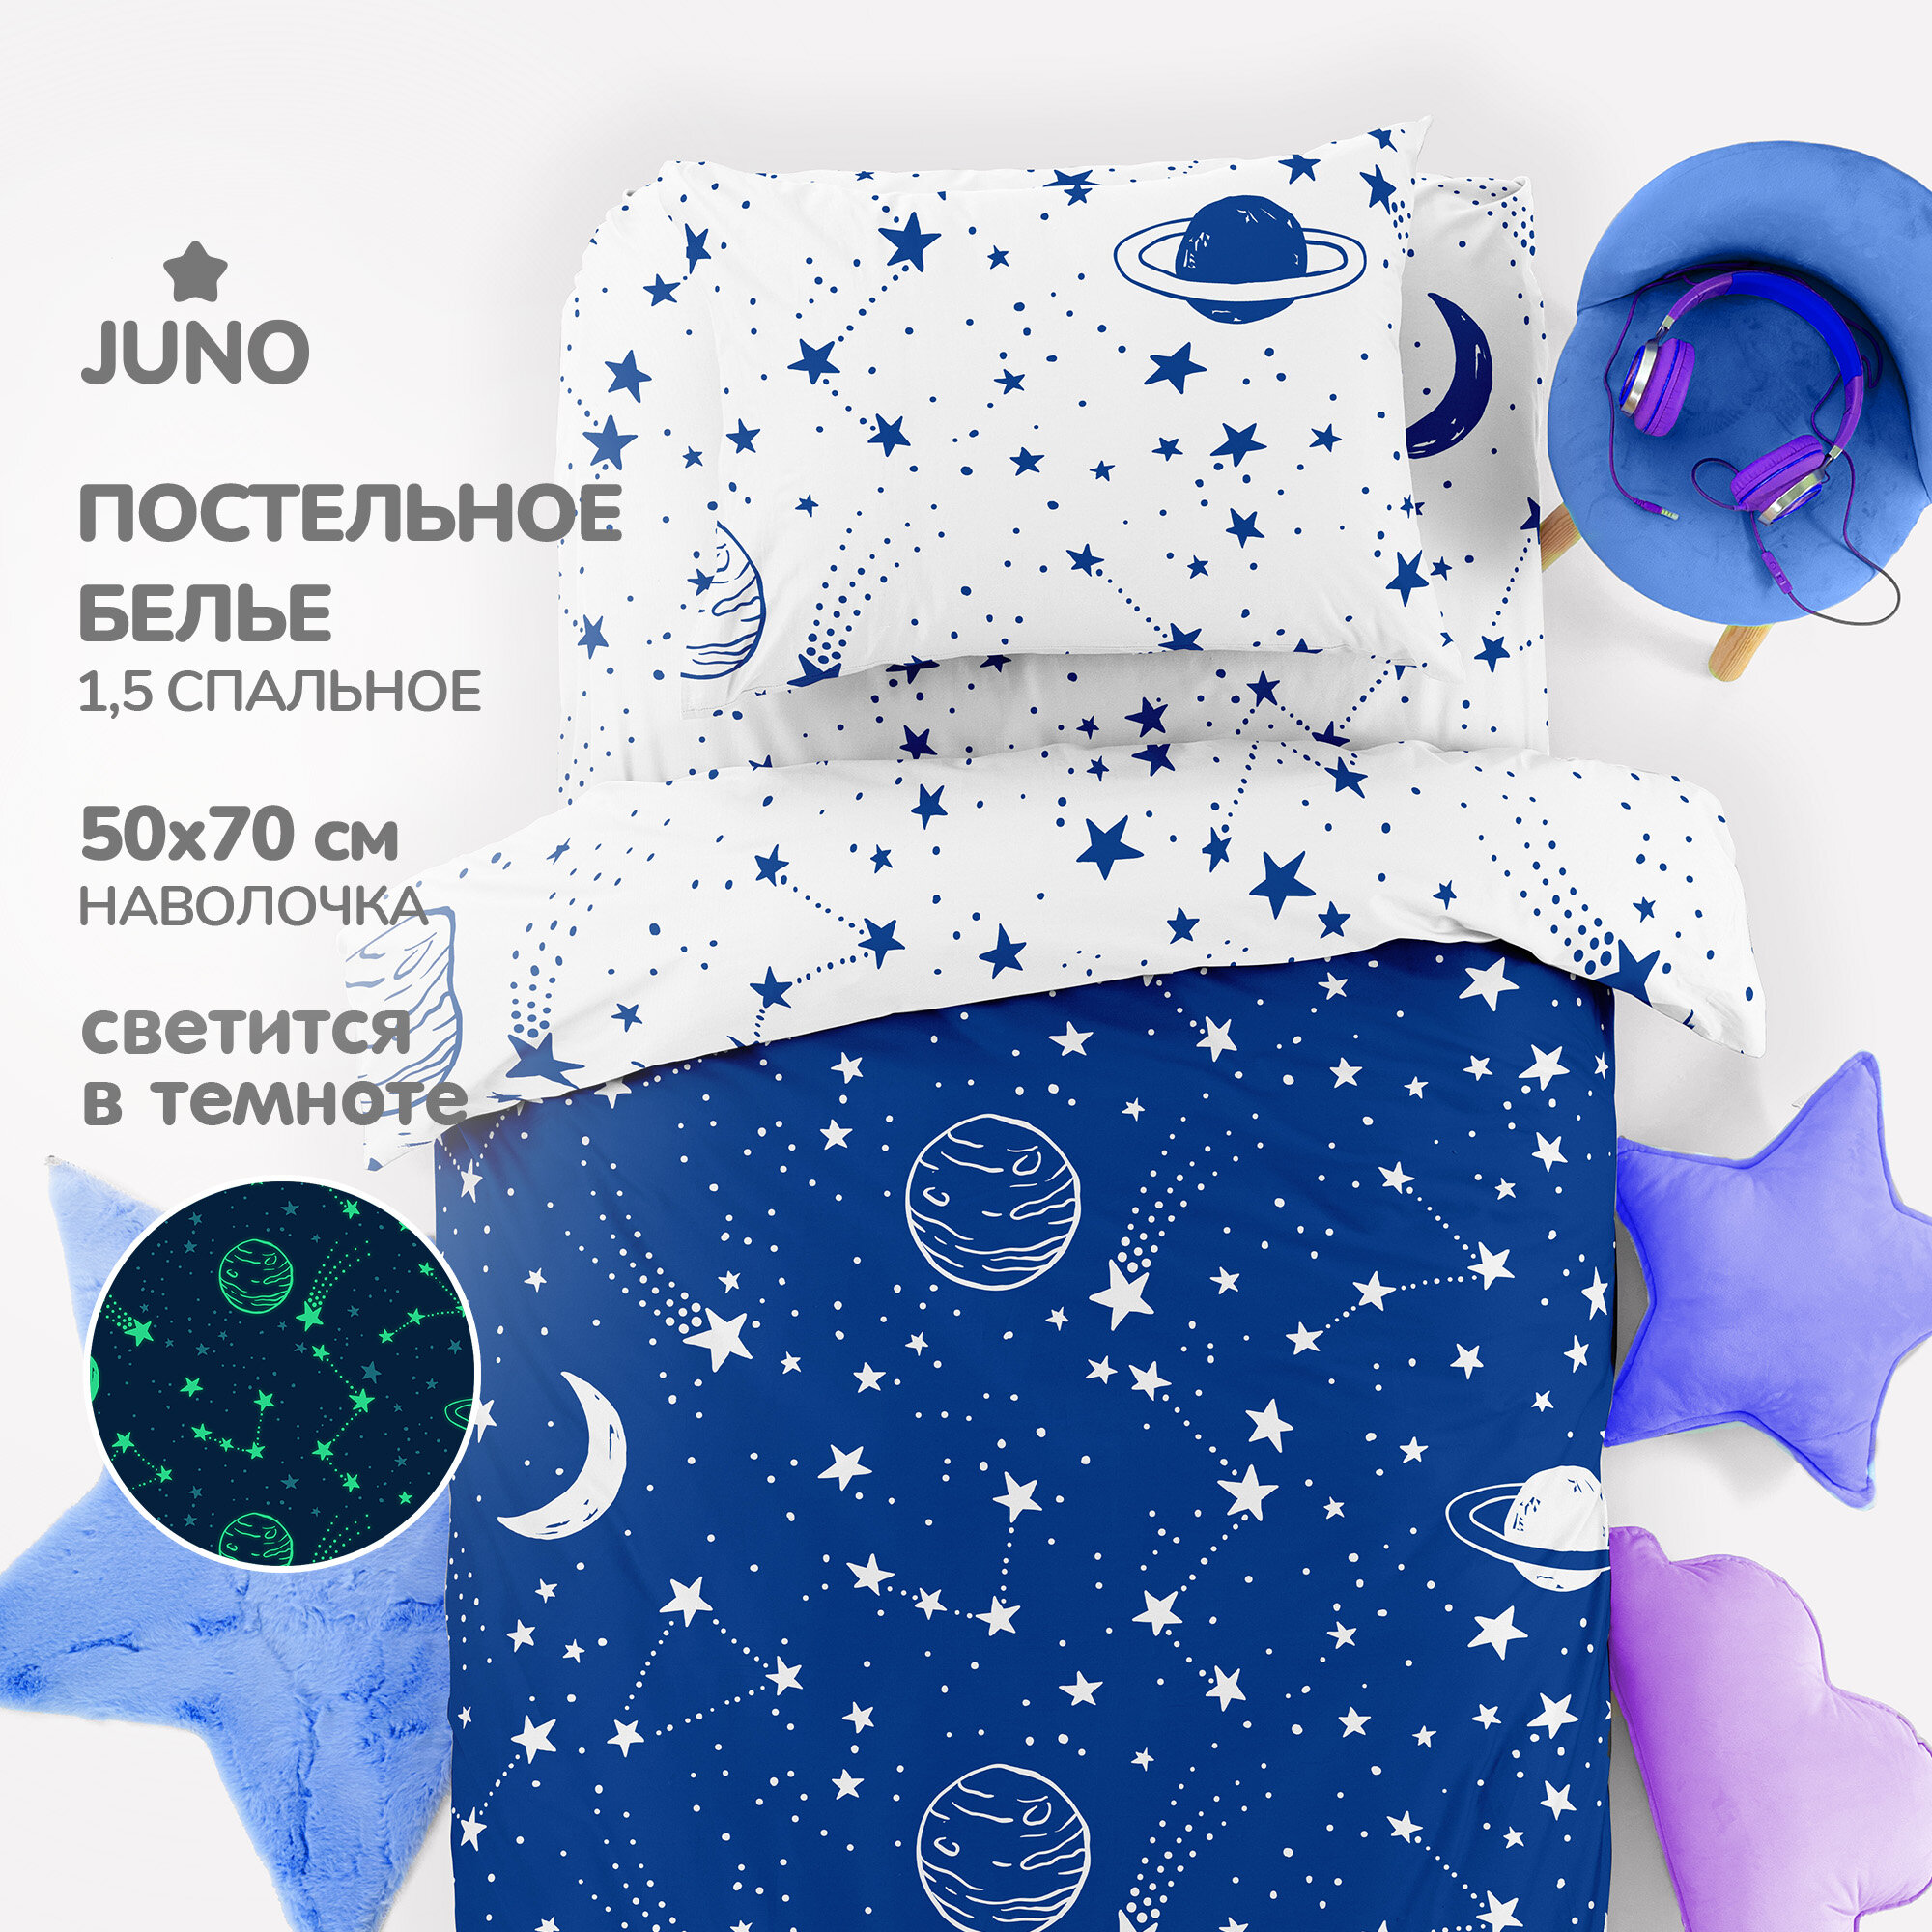 Комплект постельного белья 1.5 поплин "Juno" Неон (50х70) рис. 16584-1/16584-2 Звездное небо